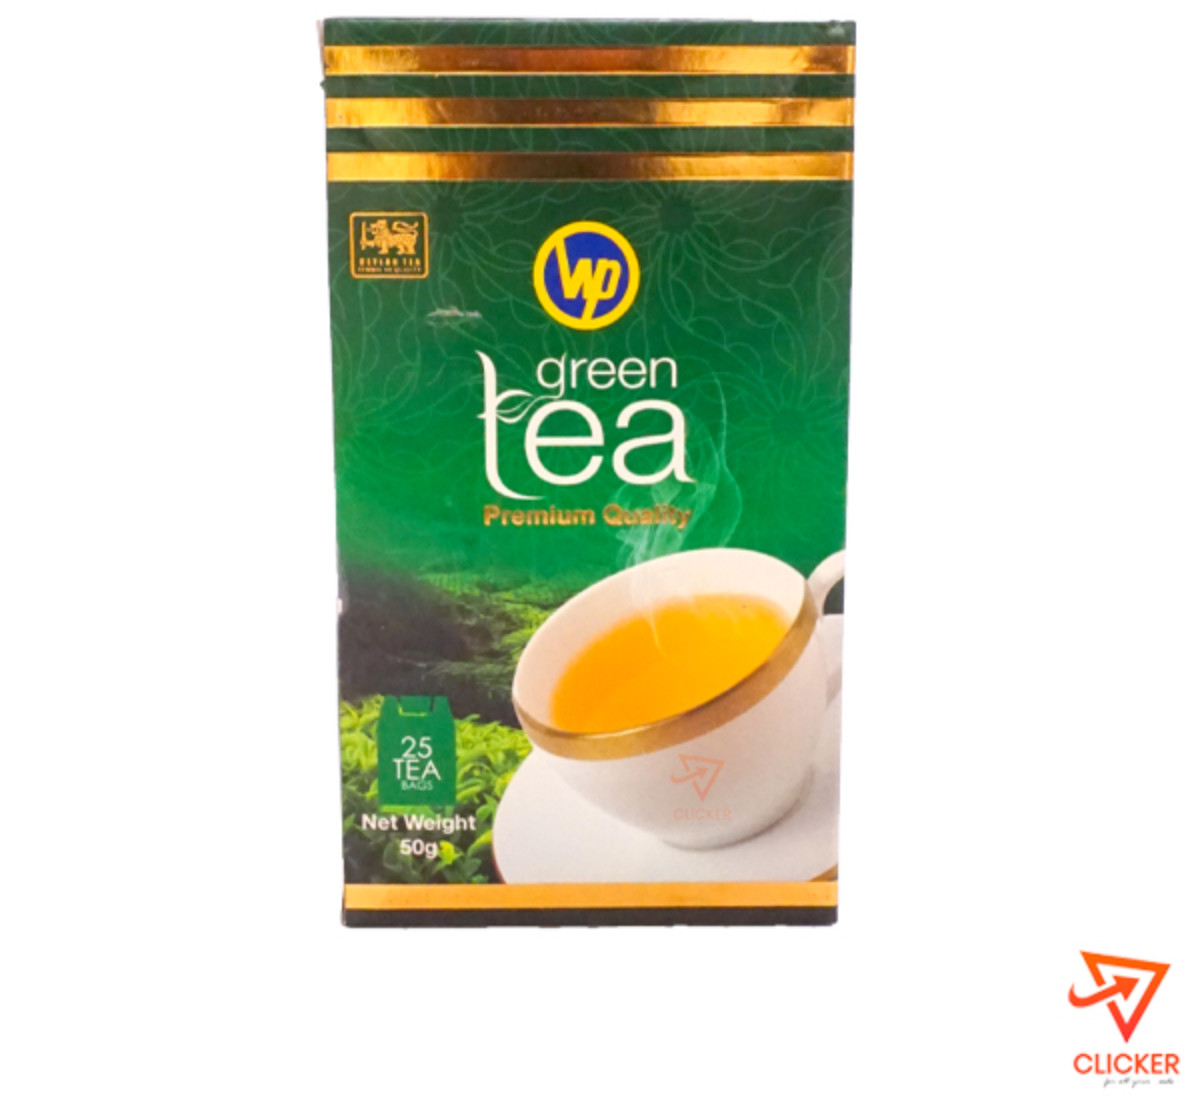 Clicker product WP green tea premium quality (25 tea bags ) 918